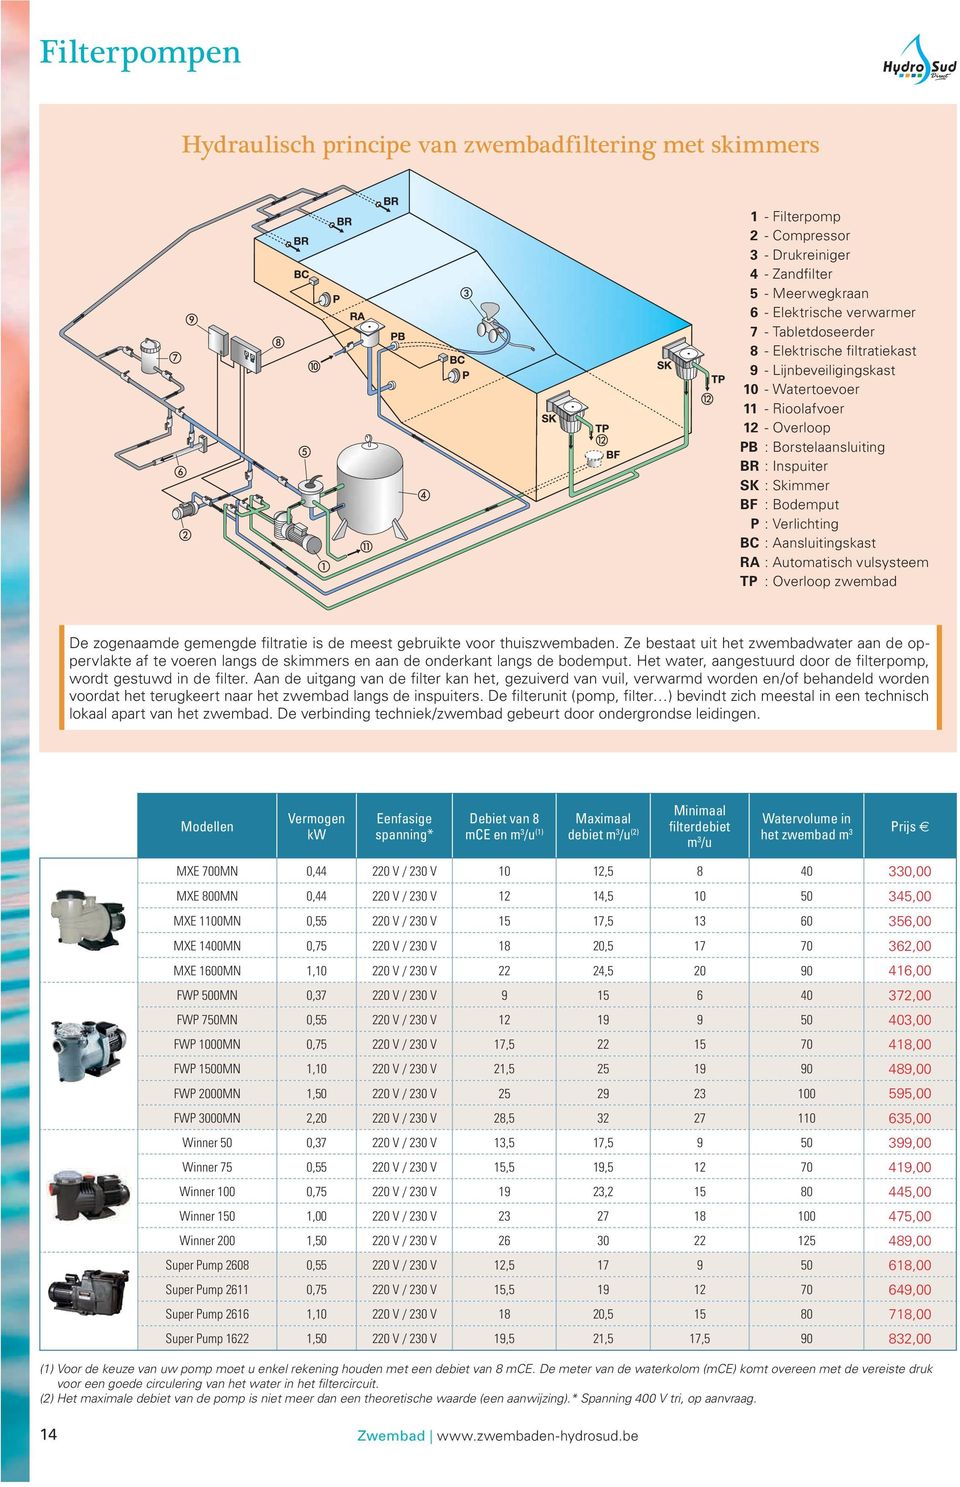 Aansluitingskast RA : Automatisch vulsysteem TP : Overloop zwembad De zogenaamde gemengde filtratie is de meest gebruikte voor thuiszwembaden.